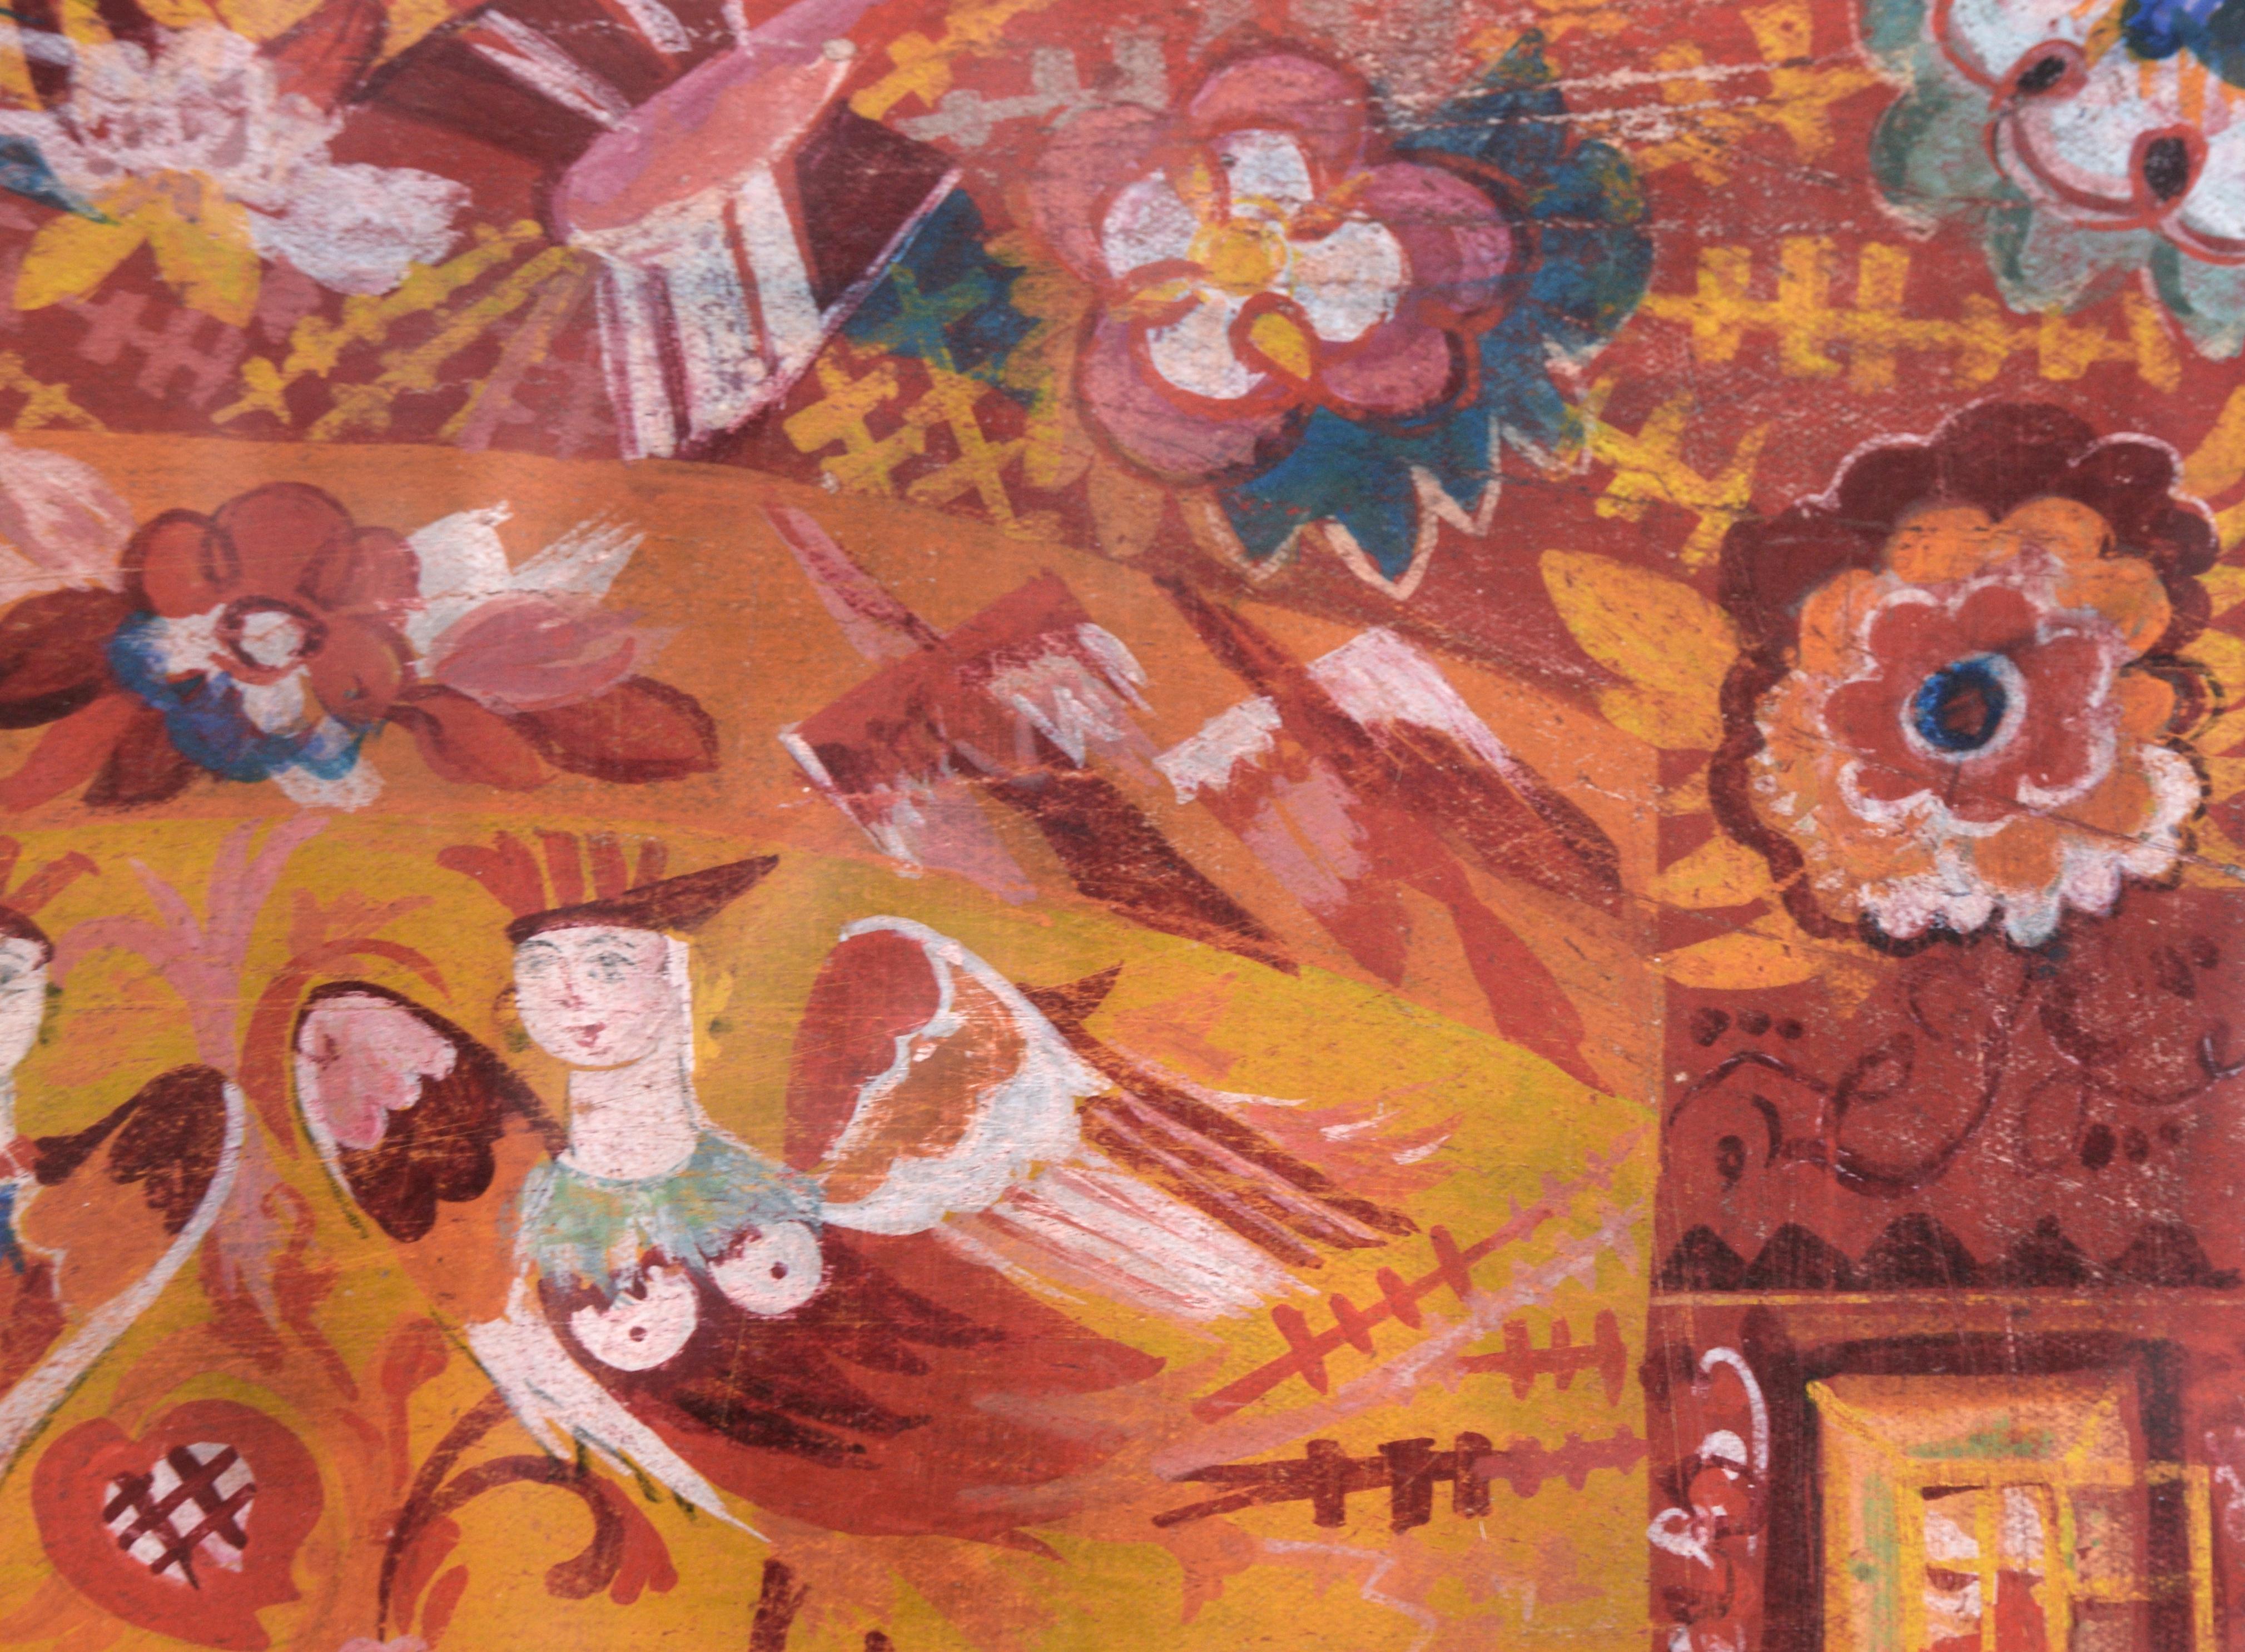 Lebendiges Bühnenbild der russischen Künstlerin Natalia Gontcharova (1881-1962). Zwei Engelsfiguren stehen im Mittelpunkt dieses Stücks, aber auch der Rest des Sets ist voller Details, darunter Blumen, Pflanzen und Muster.

Signiert 